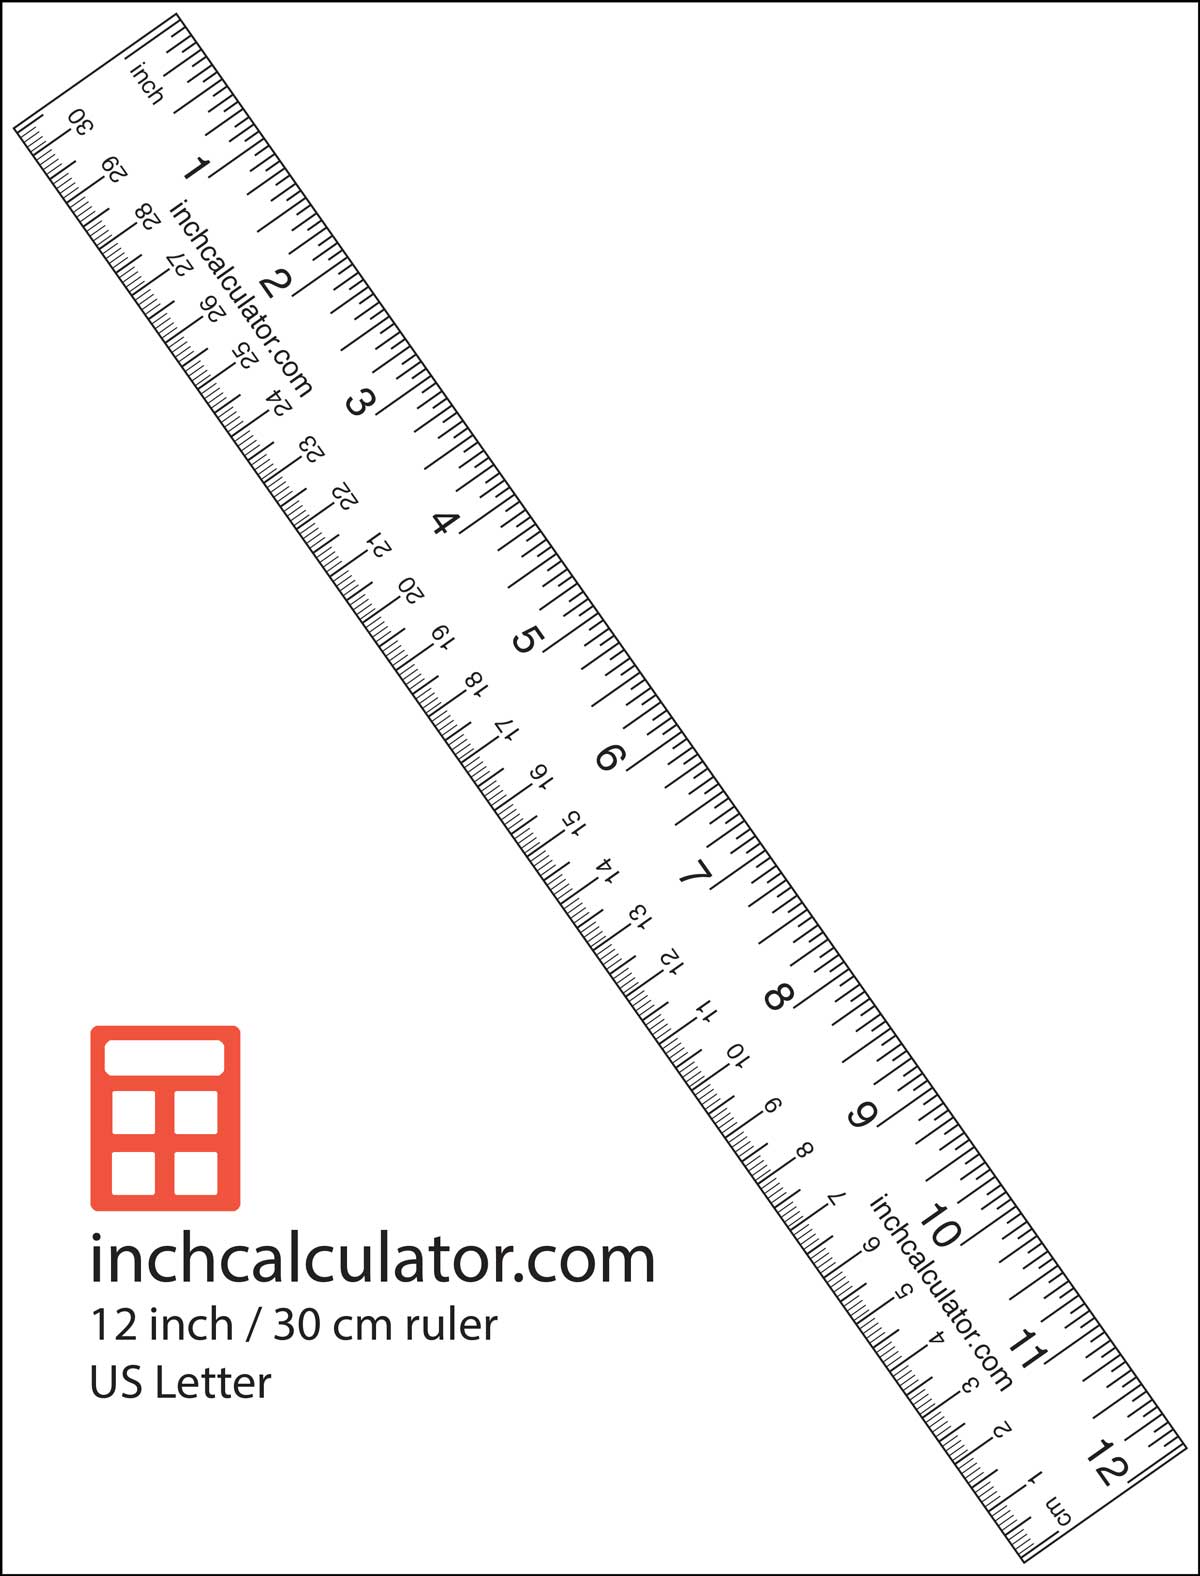 tulosta paperinen viivoitin mittojen ottamiseksi, kun sinulla ei ole mittanauhaa tai viivoitinta't have a tape measure or ruler